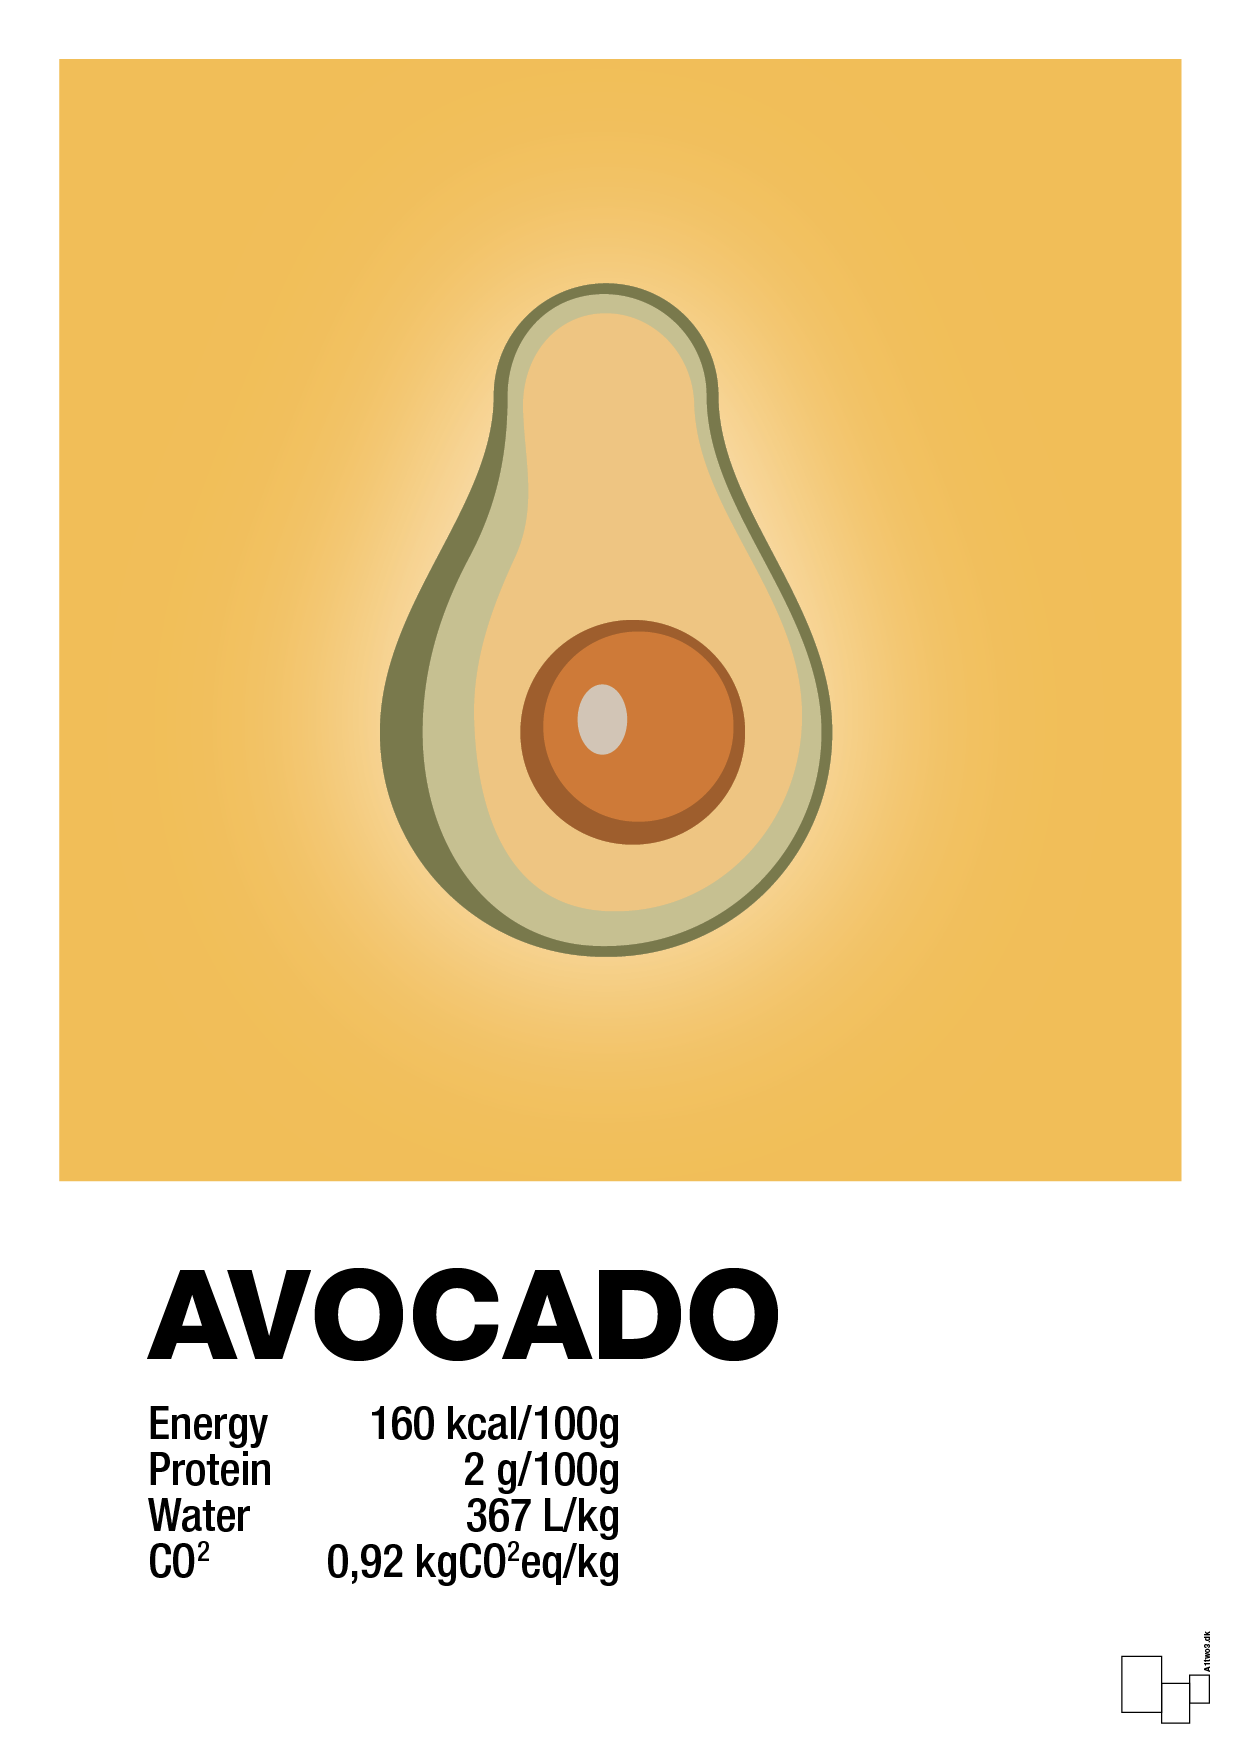 avocado nutrition og miljø - Plakat med Mad & Drikke i Honeycomb